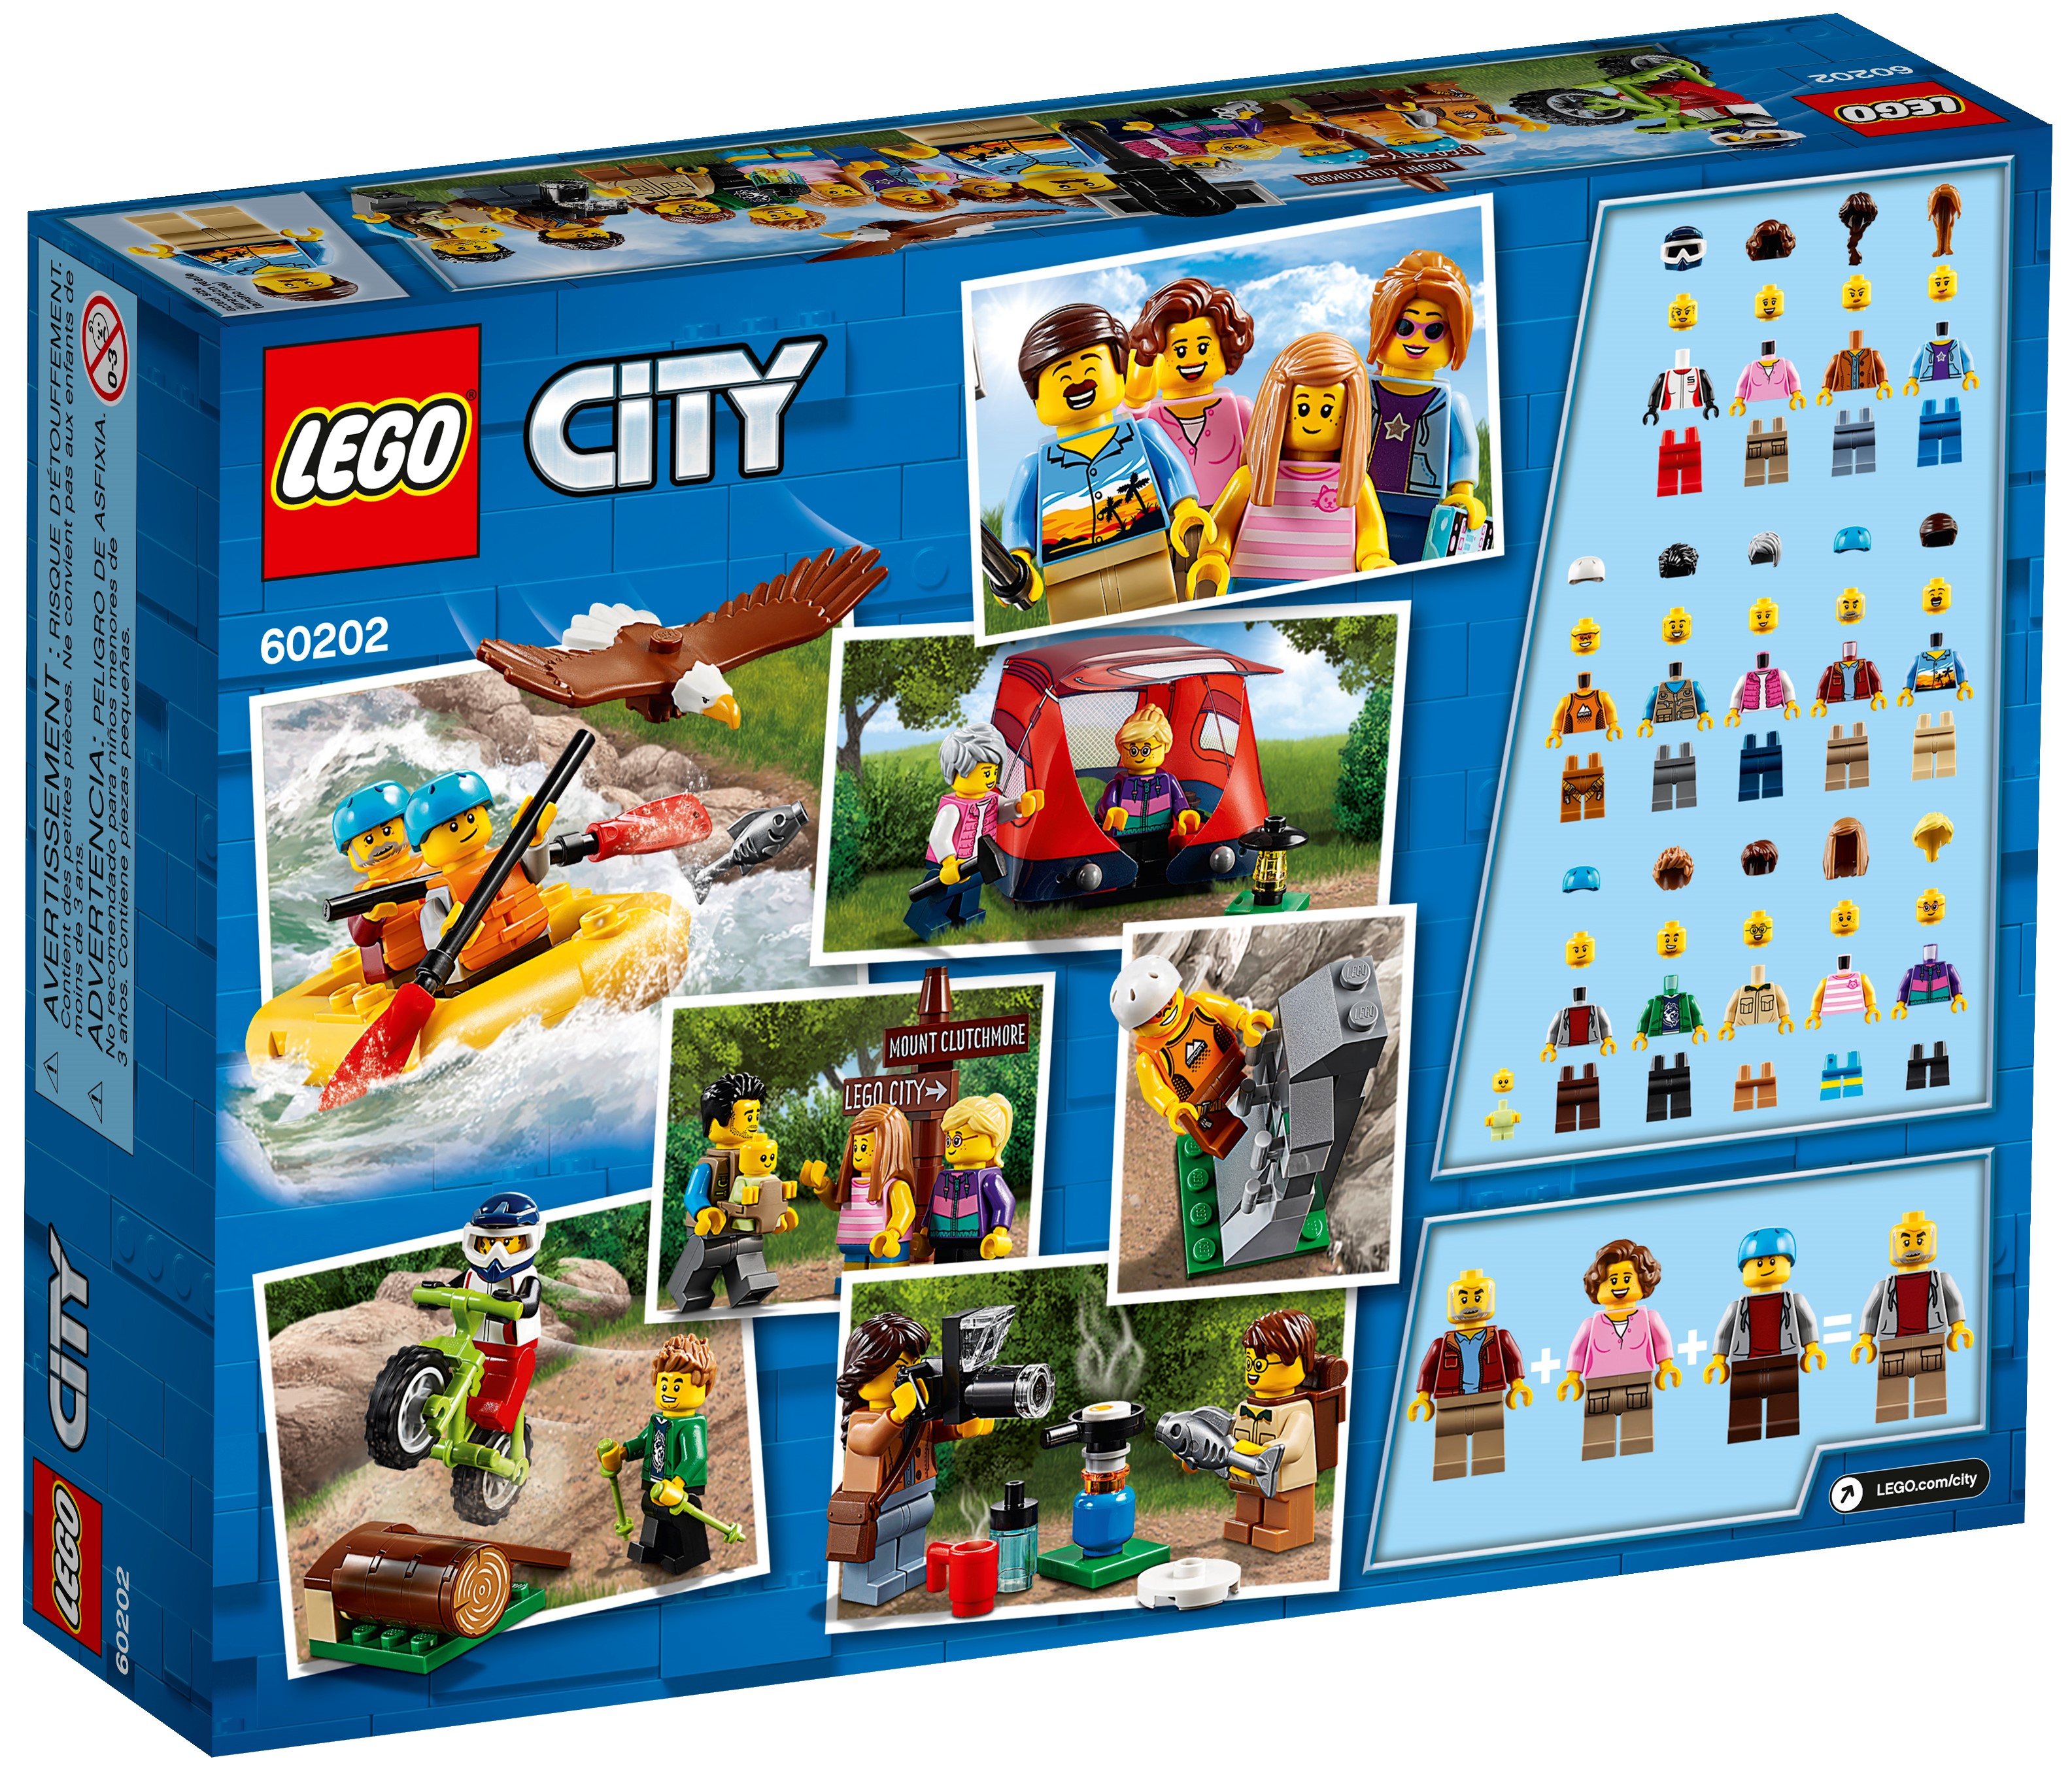 LEGO CITY avventure all'aperto Stufa e minifigura CAMPER NUOVO dal 60202 